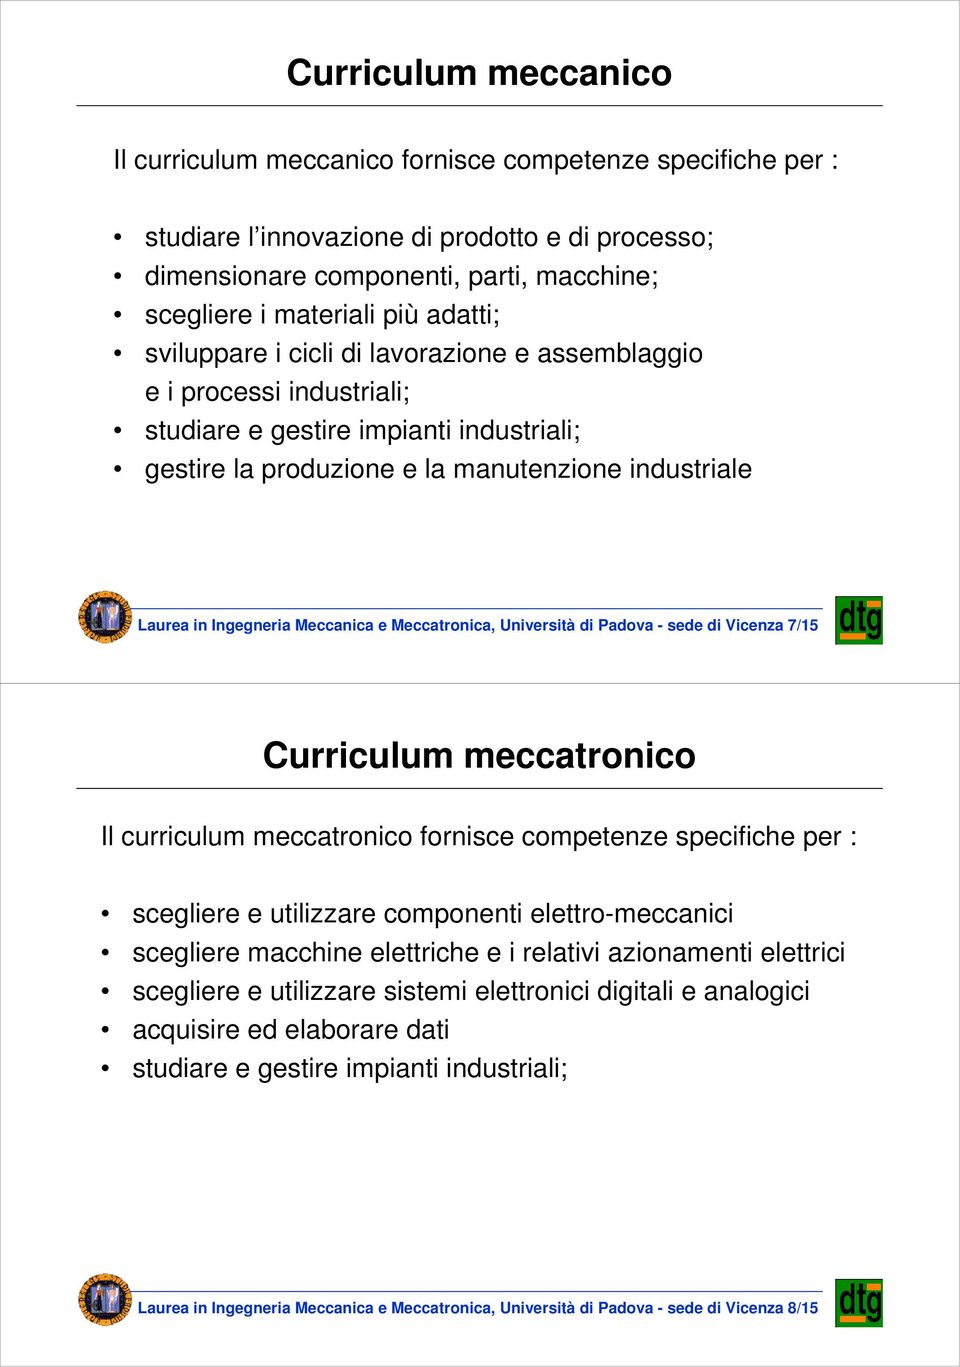 Meccanica e Meccatronica, Università di Padova - sede di Vicenza 7/15 Curriculum meccatronico Il curriculum meccatronico fornisce competenze specifiche per : scegliere e utilizzare componenti